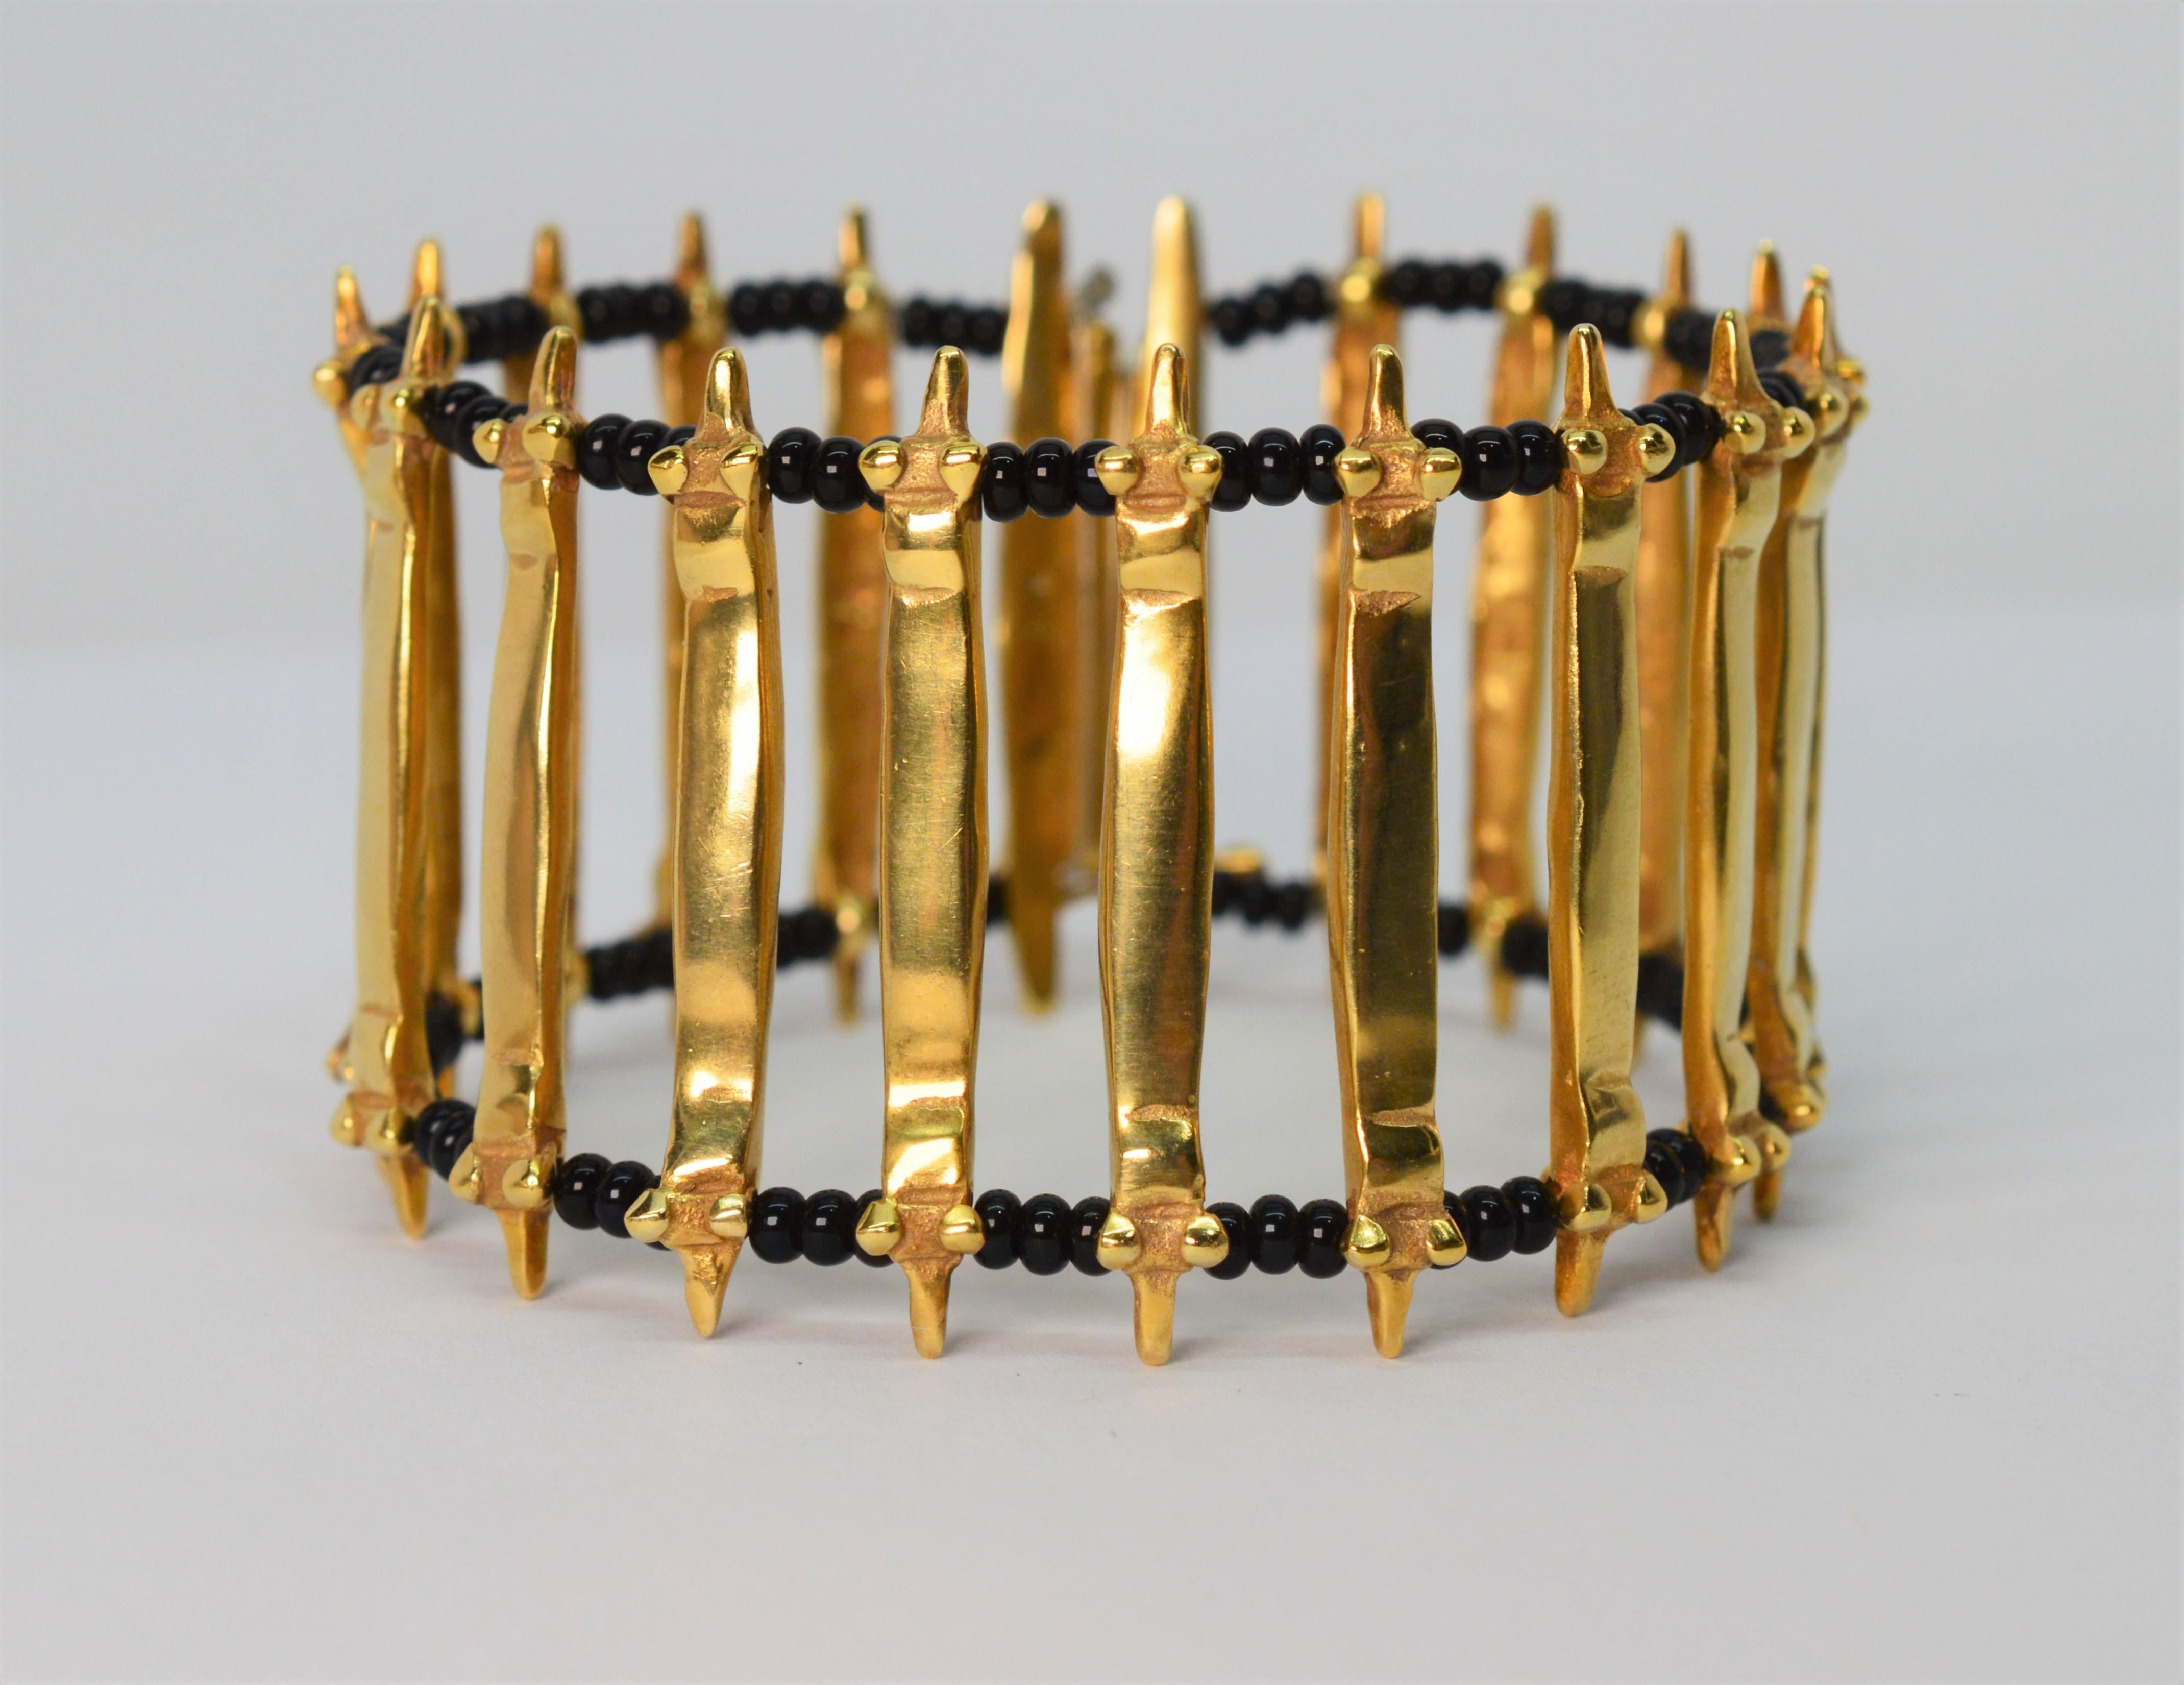 Des accents artisanaux donnent à ce bracelet en or jaune 18 carats son style rustique unique. Des maillons en or moulé et martelé d'inspiration architecturale sont tissés en échelle avec des perles d'onyx noir contrastantes pour créer un motif